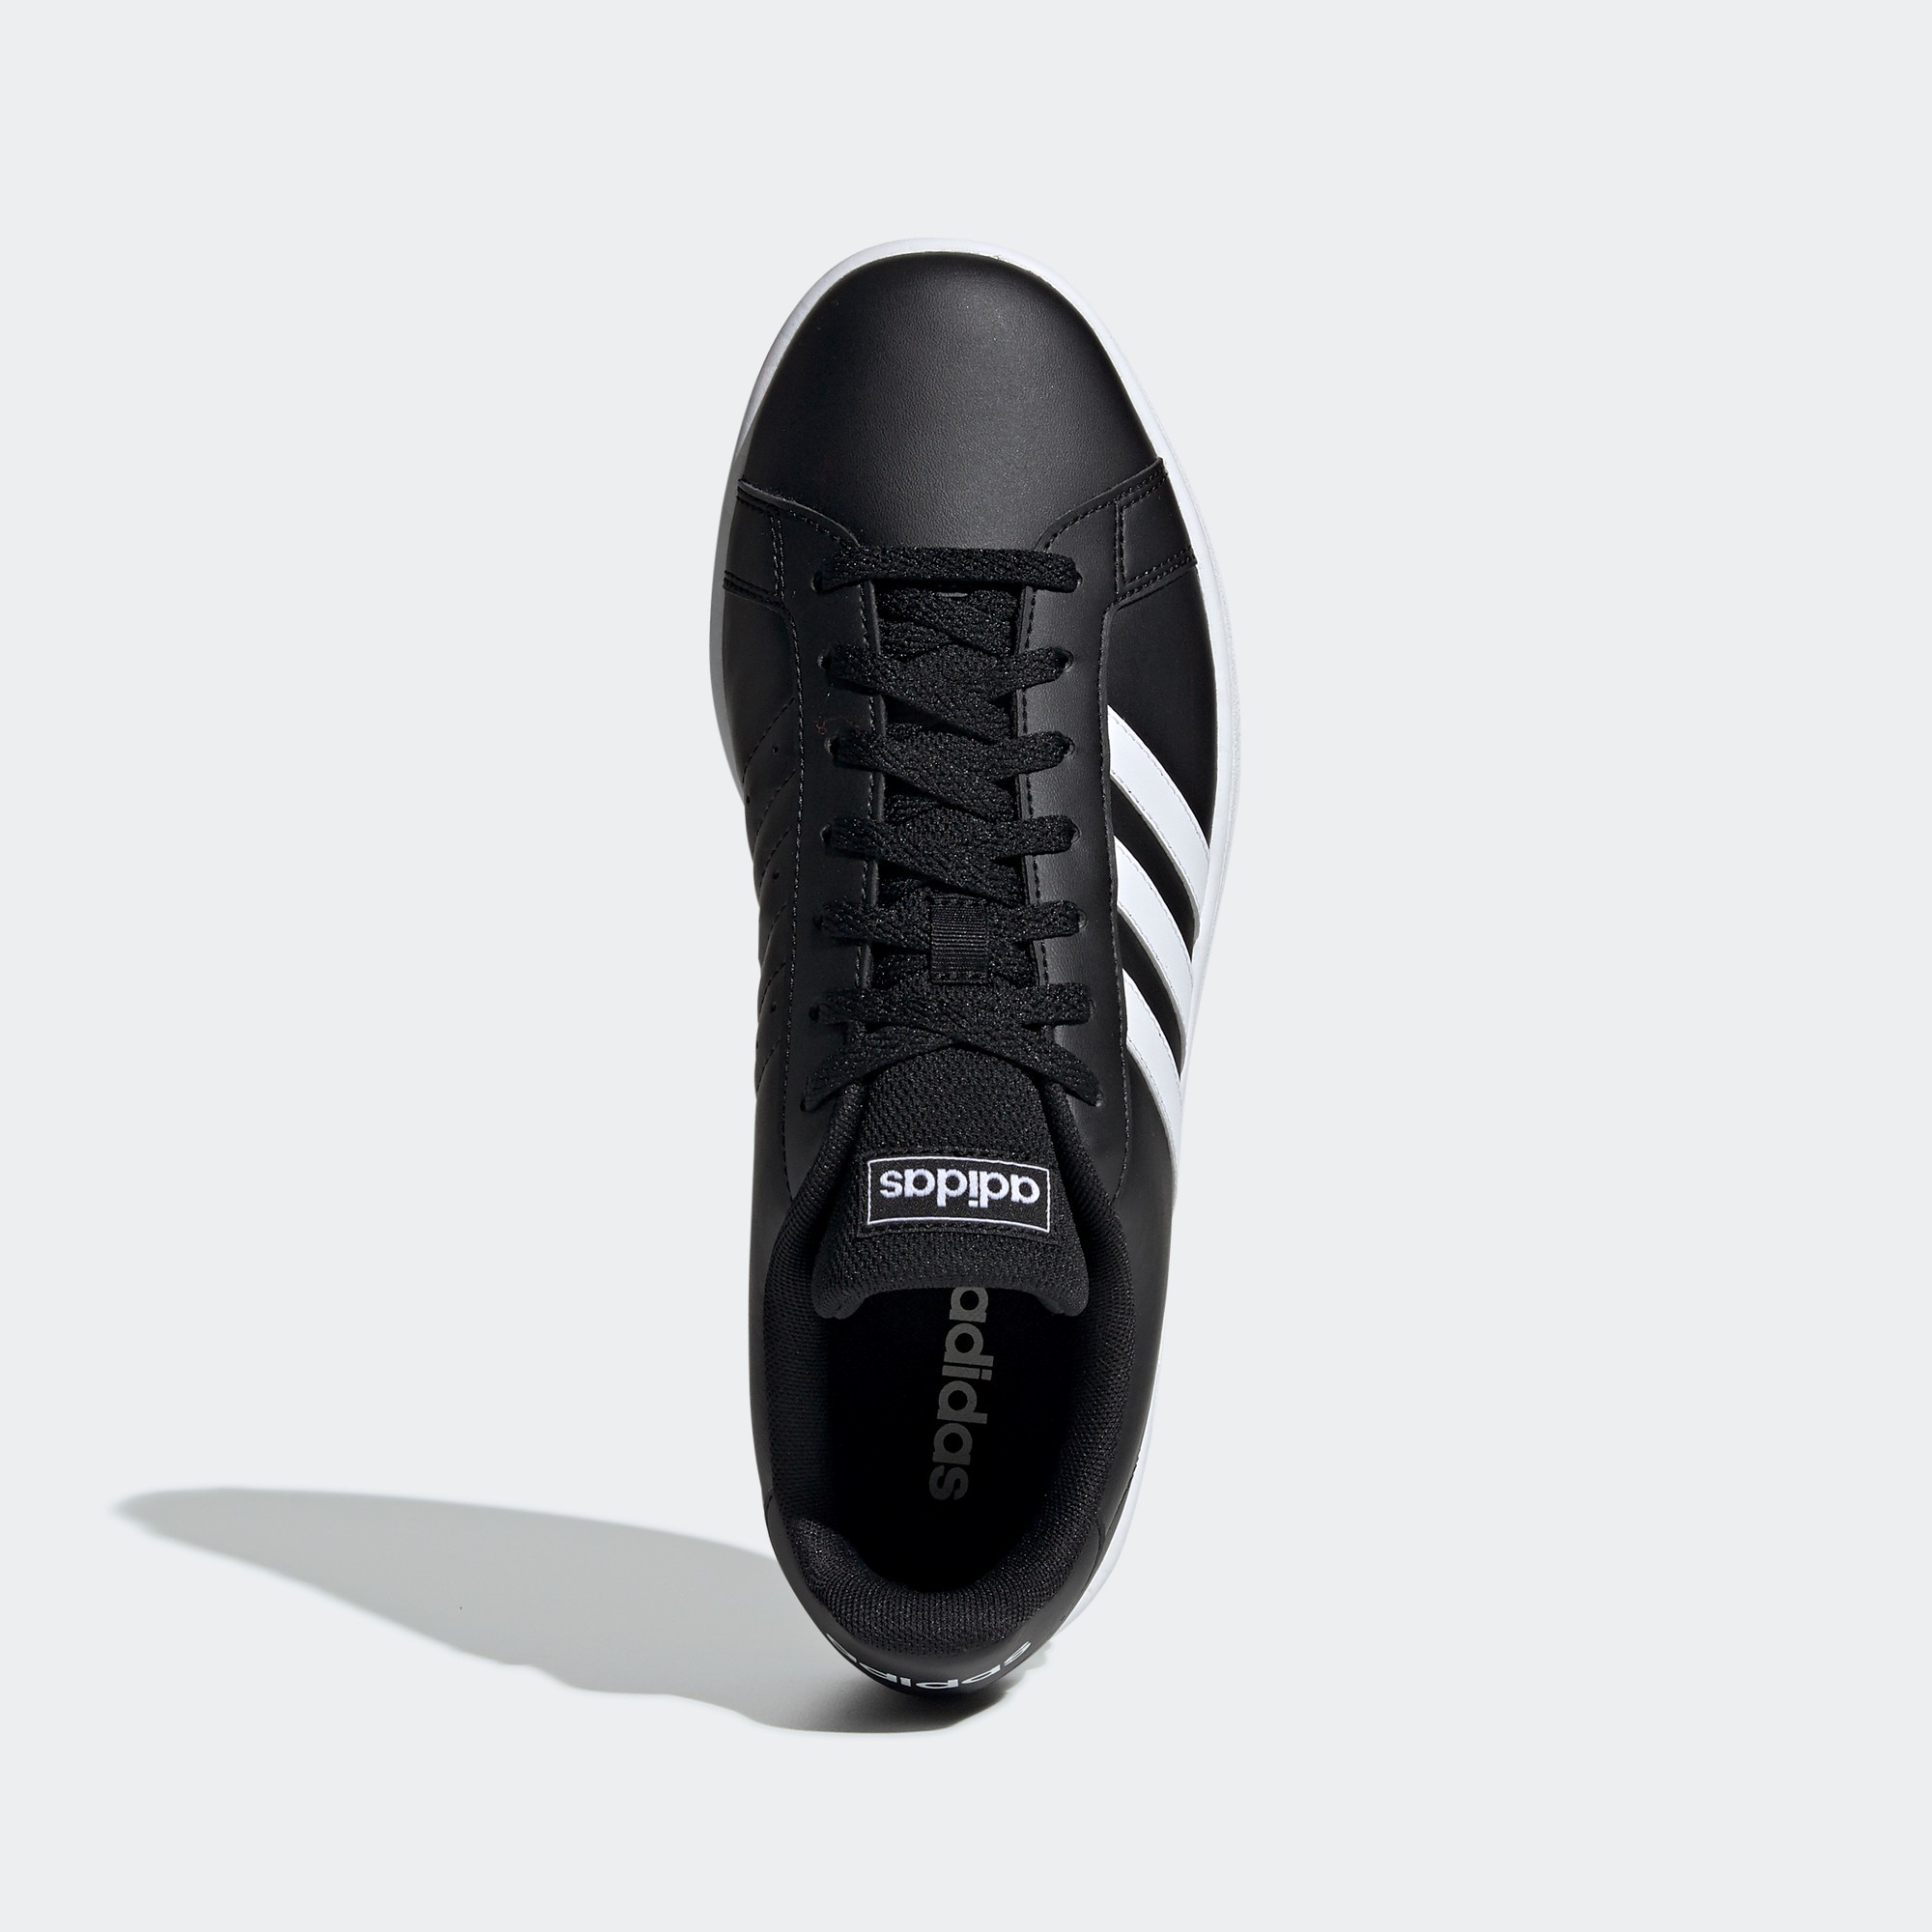 adidas TENNIS รองเท้า Grand Court Base ผู้ชาย สีดำ EE7900